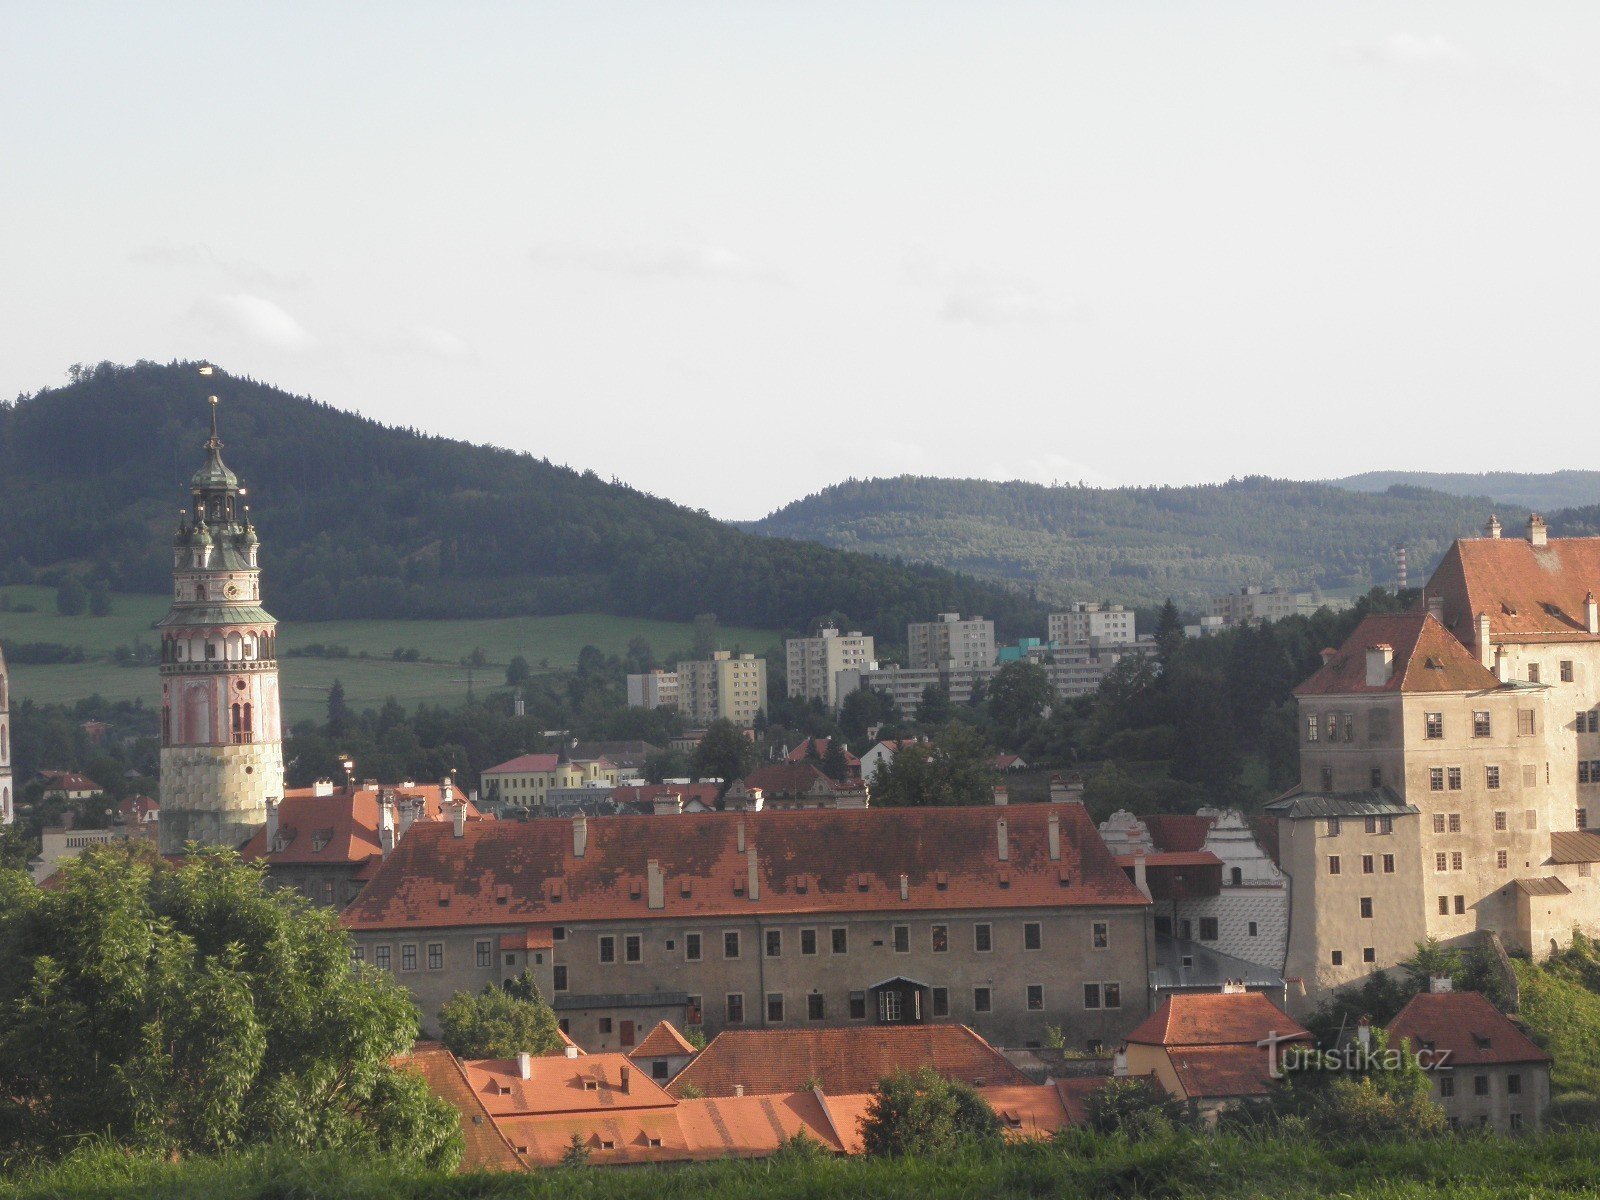 Český Krumlov from Vyšehrad (lookout point)